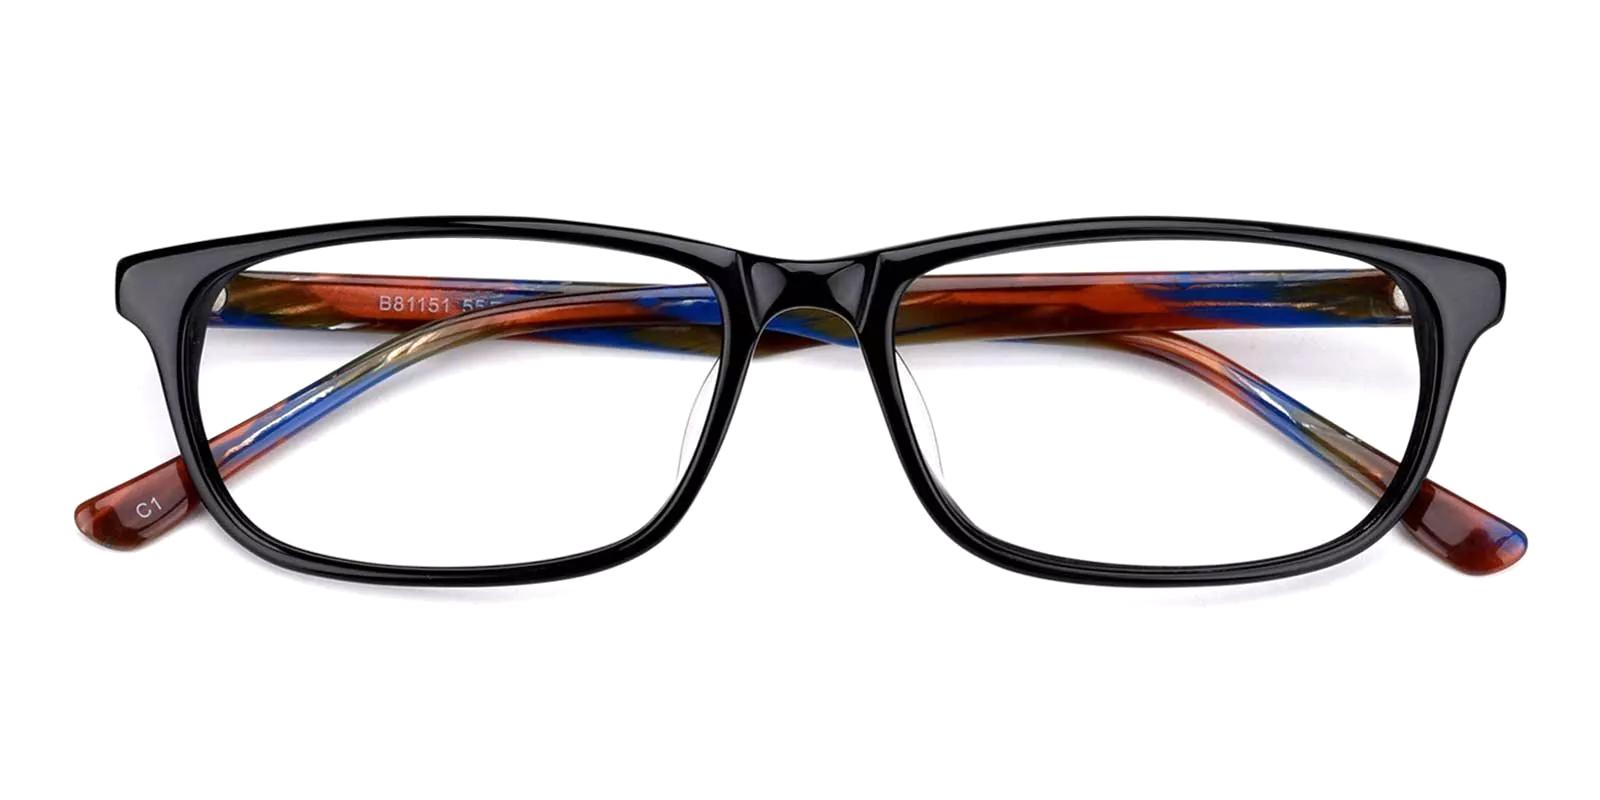 Felin Black Acetate Eyeglasses , UniversalBridgeFit Frames from ABBE Glasses